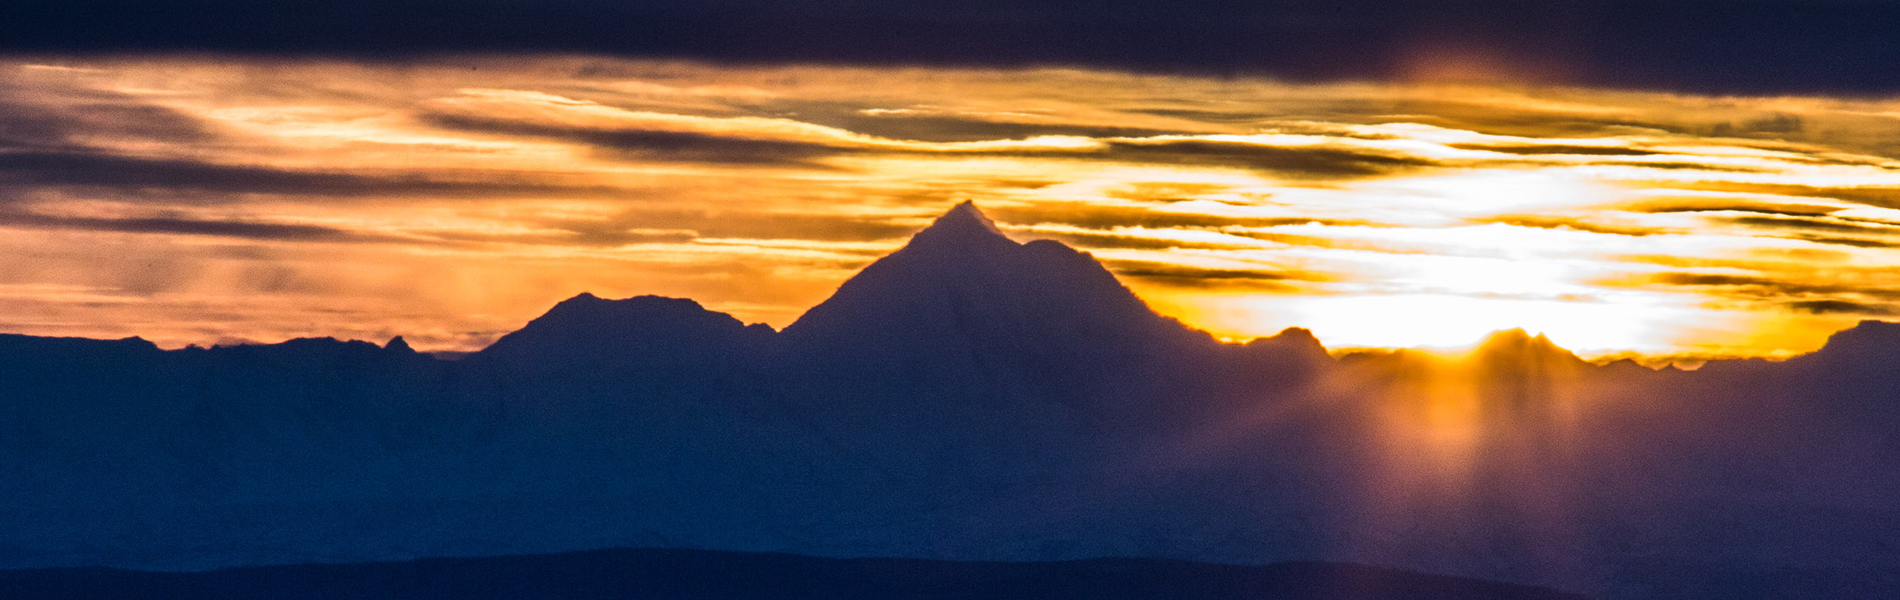 Alaska mountain range sunset